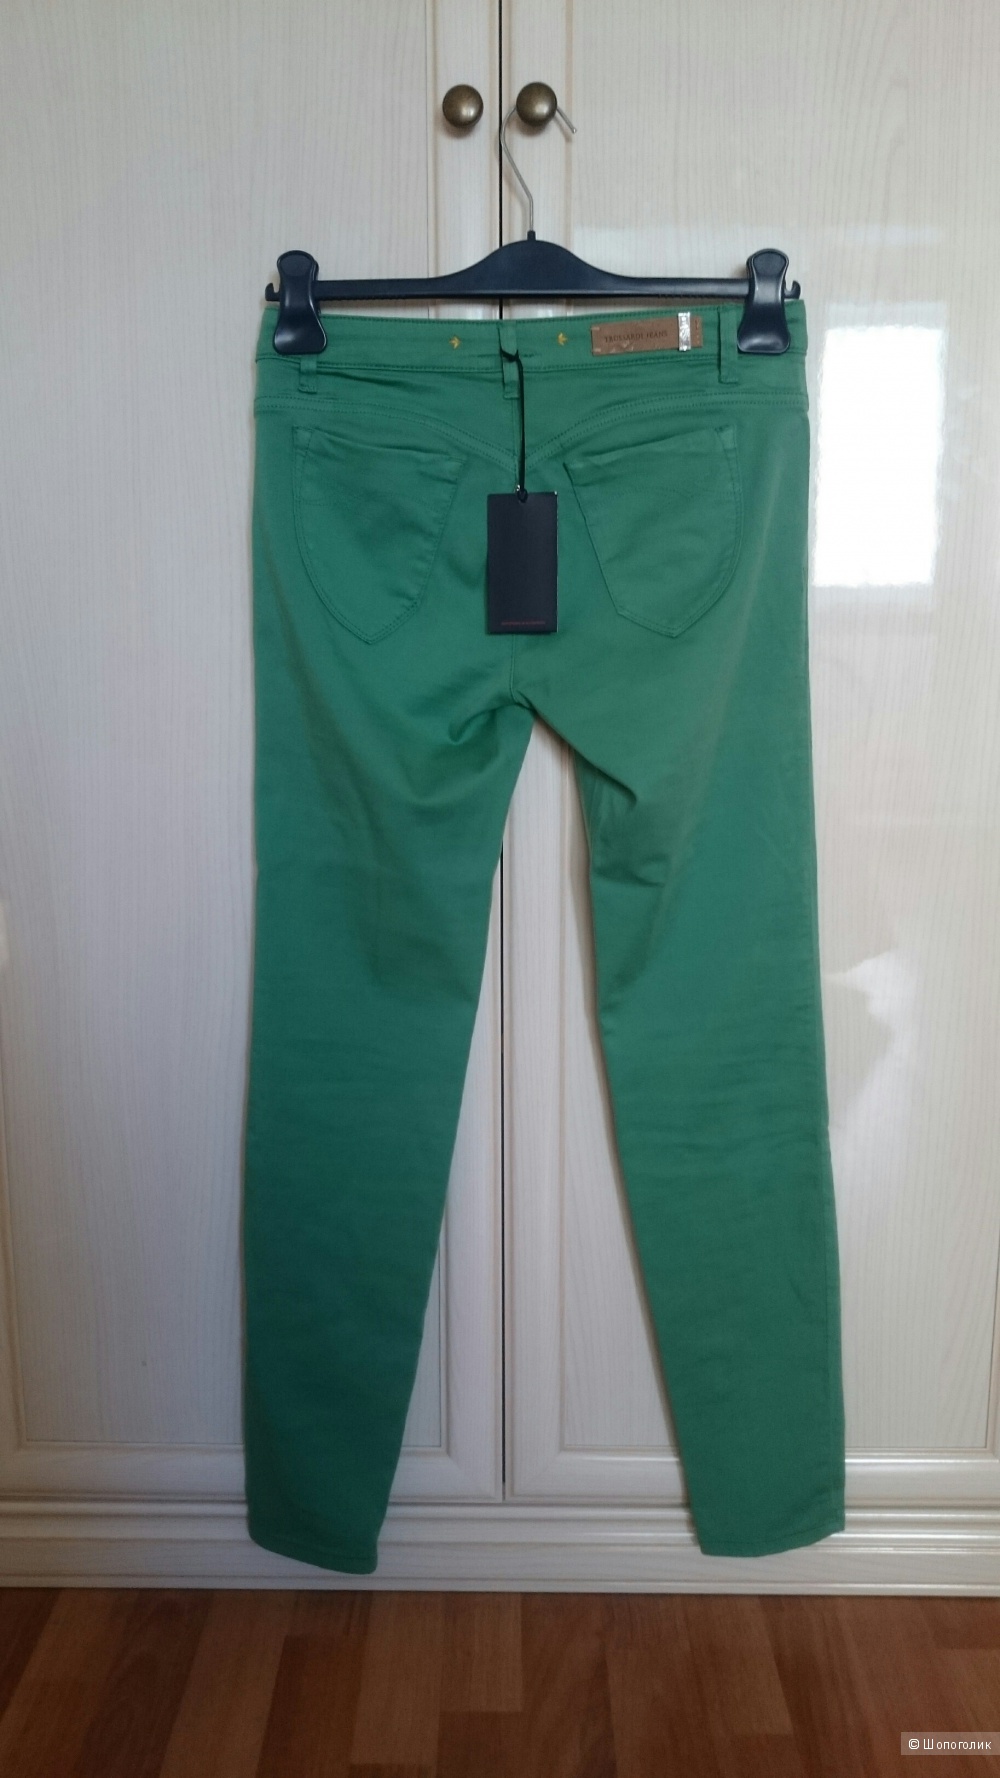 Джинсовые брюки Trussardi,  размер 27